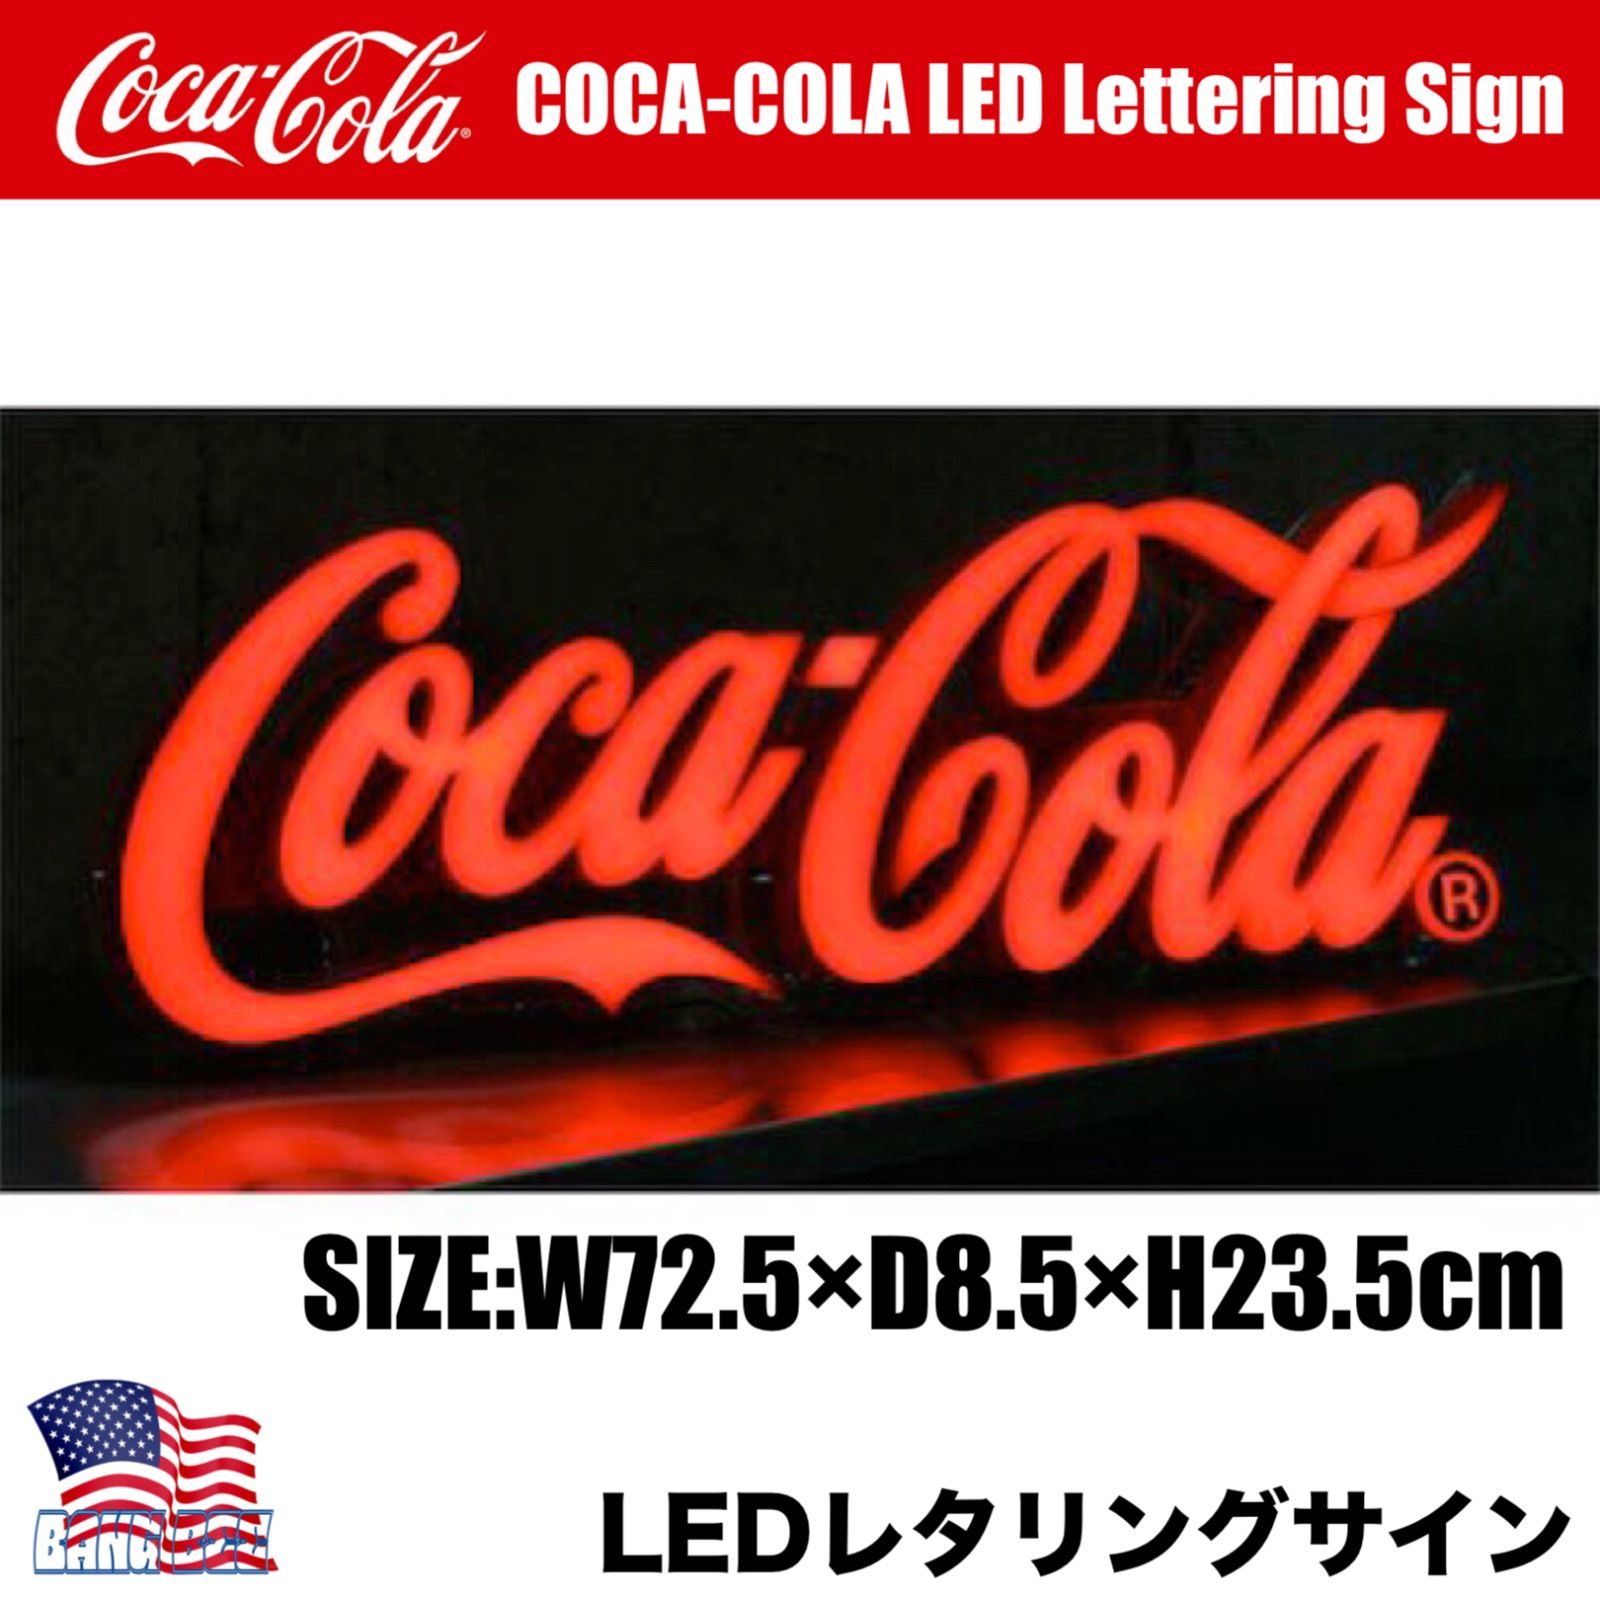 新品 🇺🇸 COCA-COLA LED LETTERING SIGN コカコーラ ロゴ LED レタリング サイン アメリカン雑貨 インテリア  ガレージ ネオン 看板 点滅式 ライトアップ ロゴ カフェ ダイナー - メルカリ